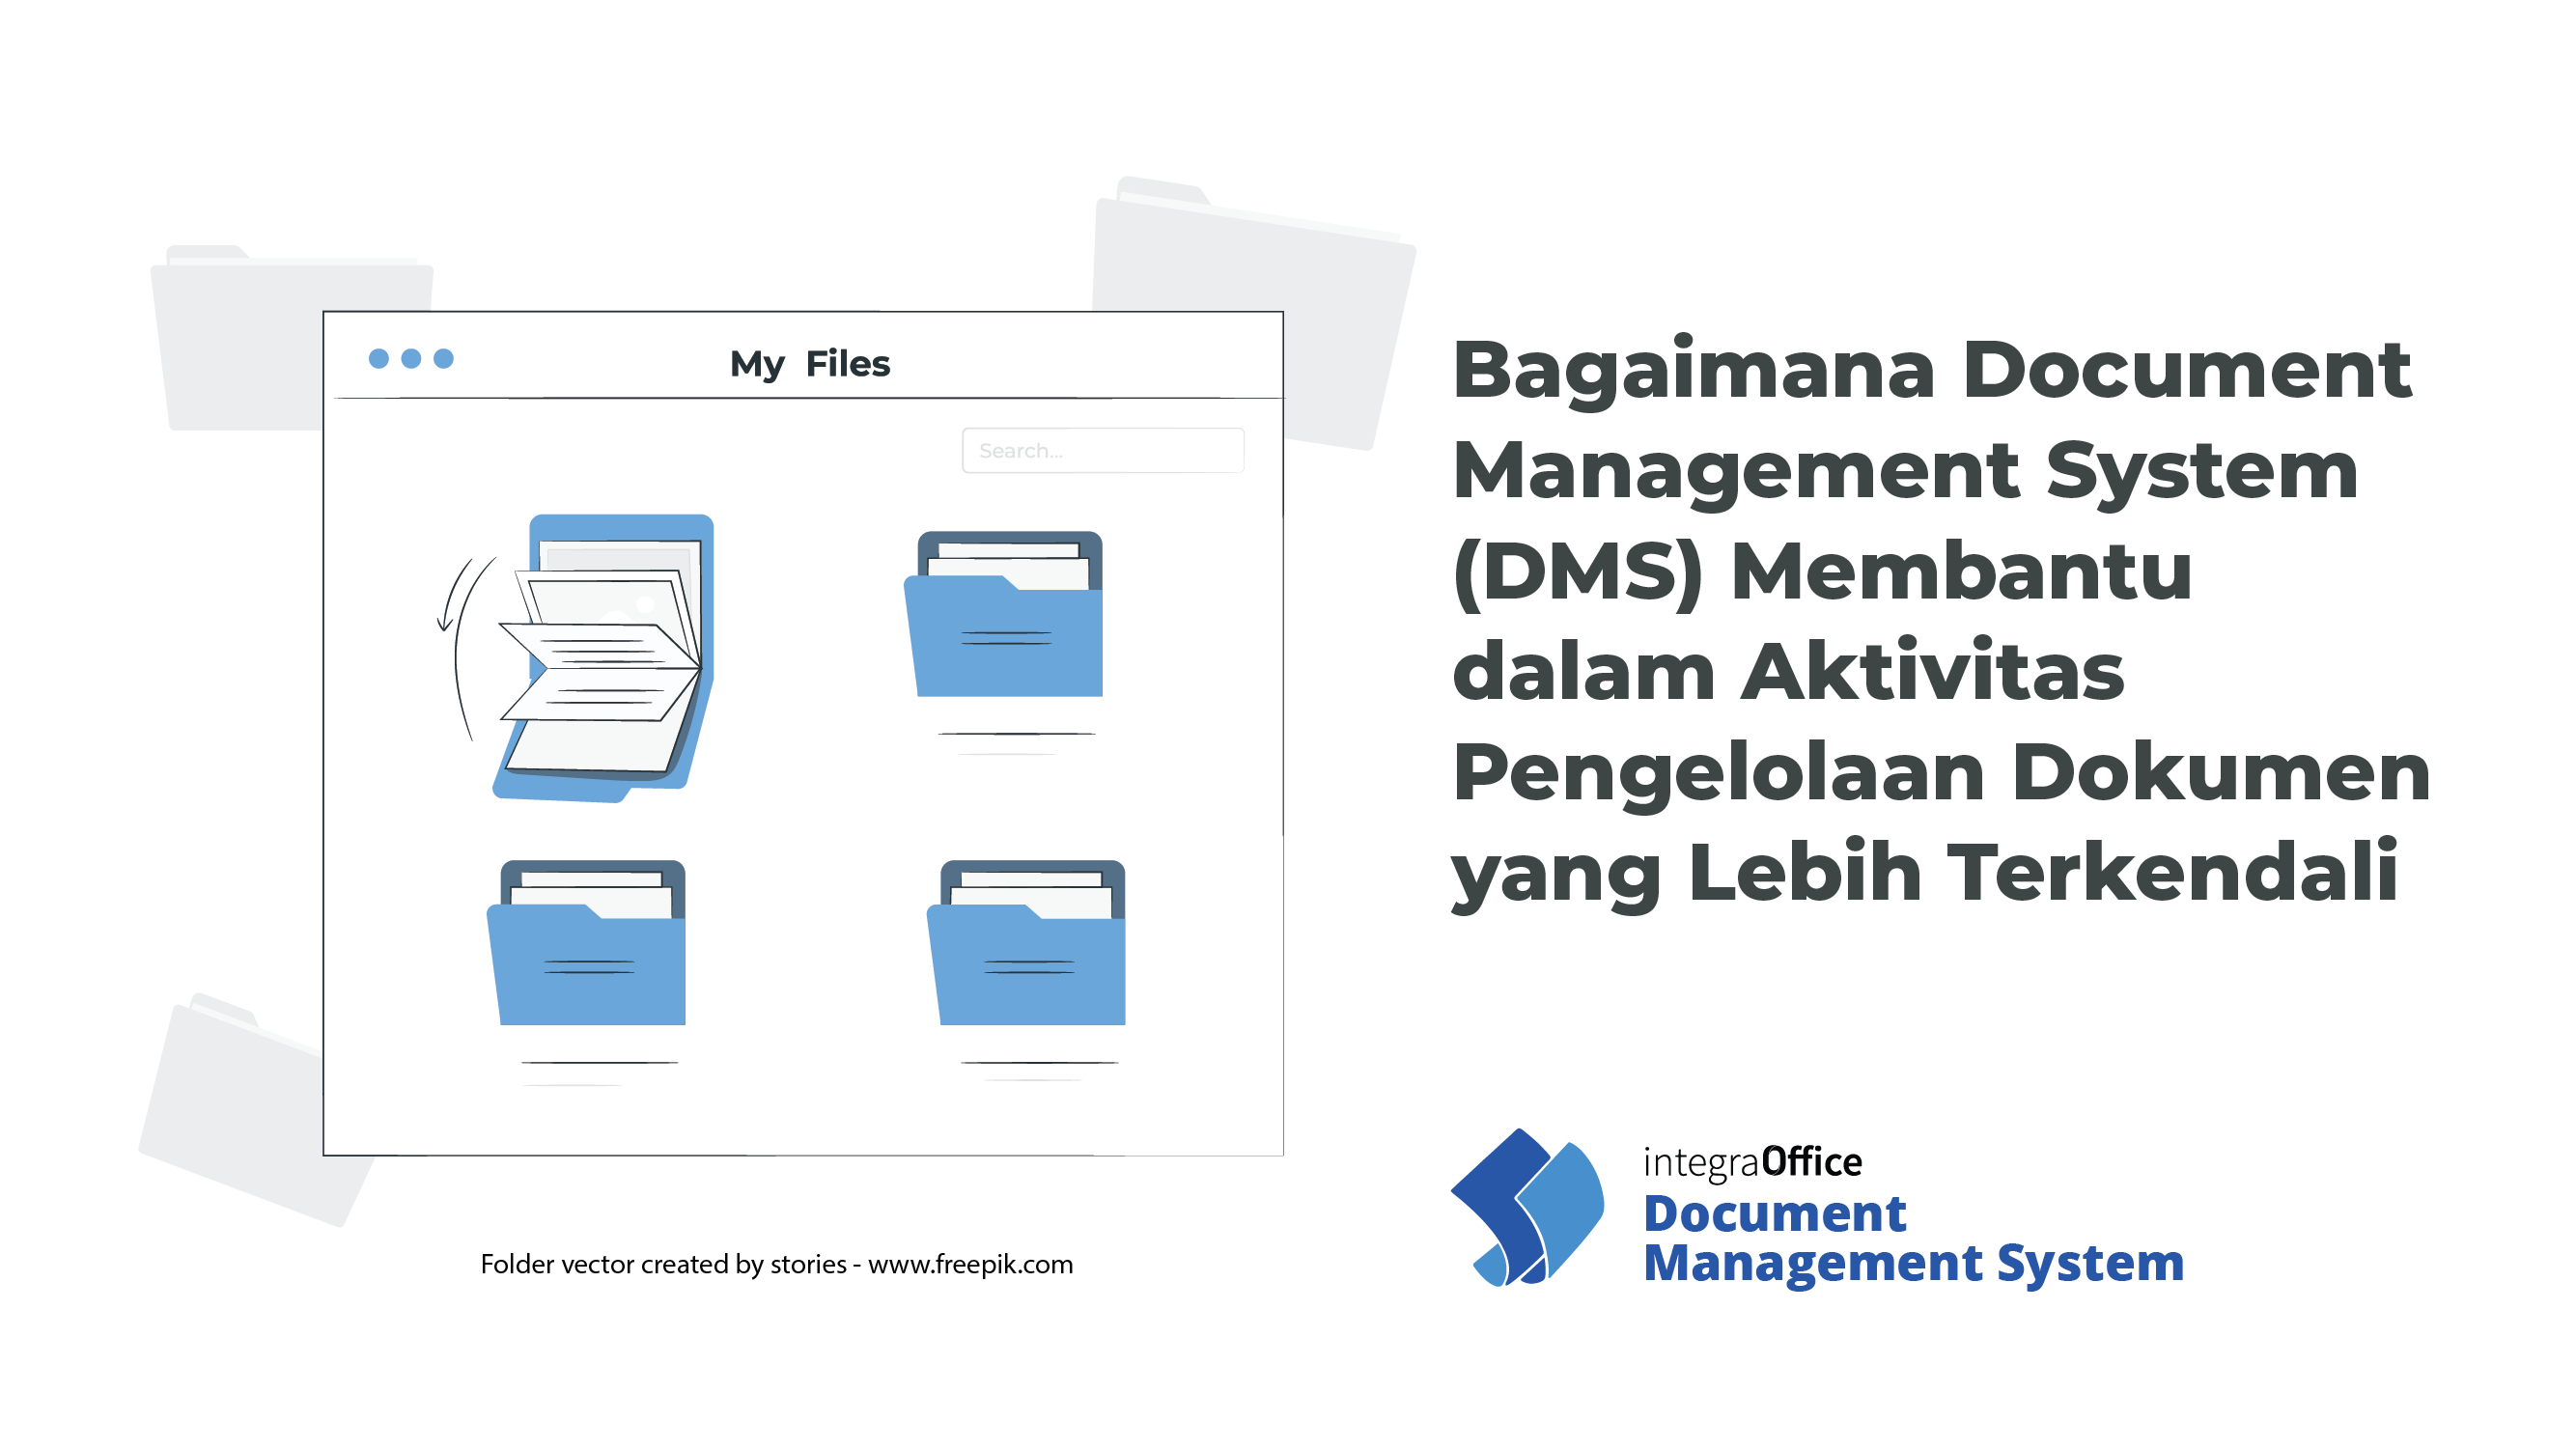 Bagaimana Document Management System (DMS) Membantu dalam Aktivitas Pengelolaan Dokumen yang Lebih Terkendali-36